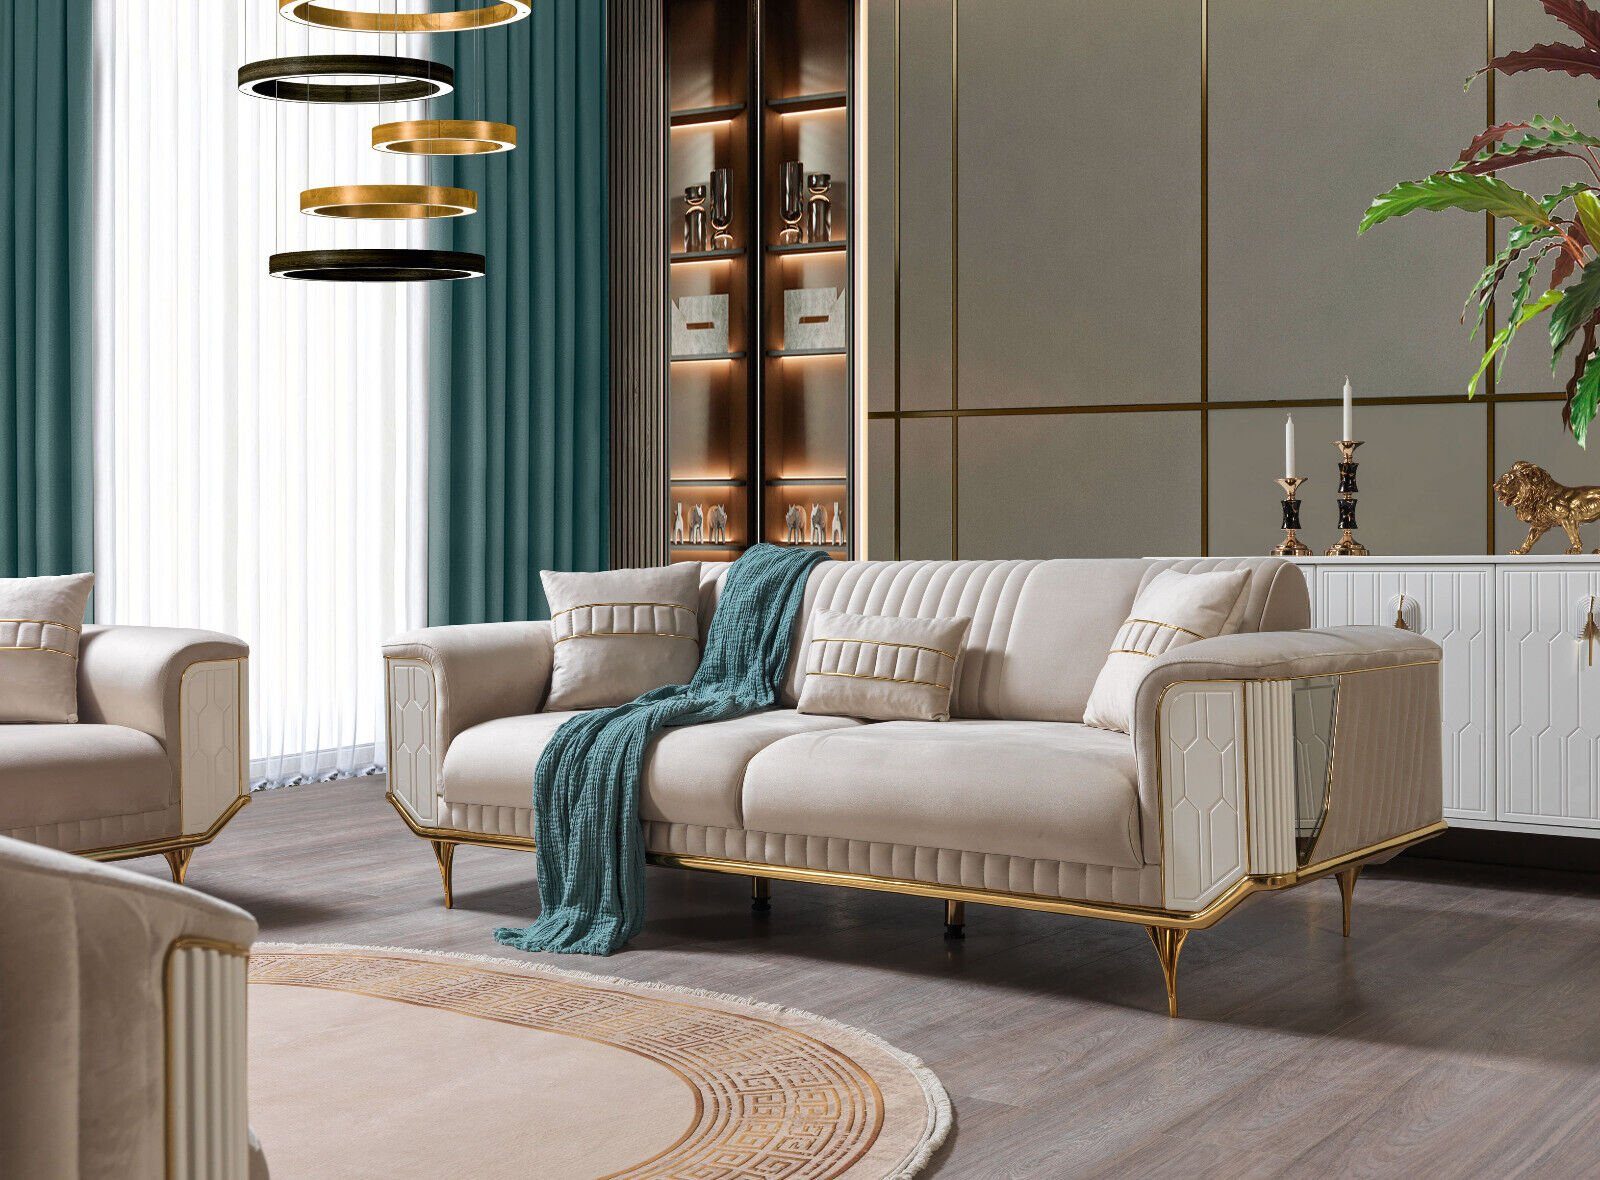 JVmoebel 3-Sitzer Wohnzimmer Sofas 3 Sitzer Polster Luxus Texti Couch Design Beige